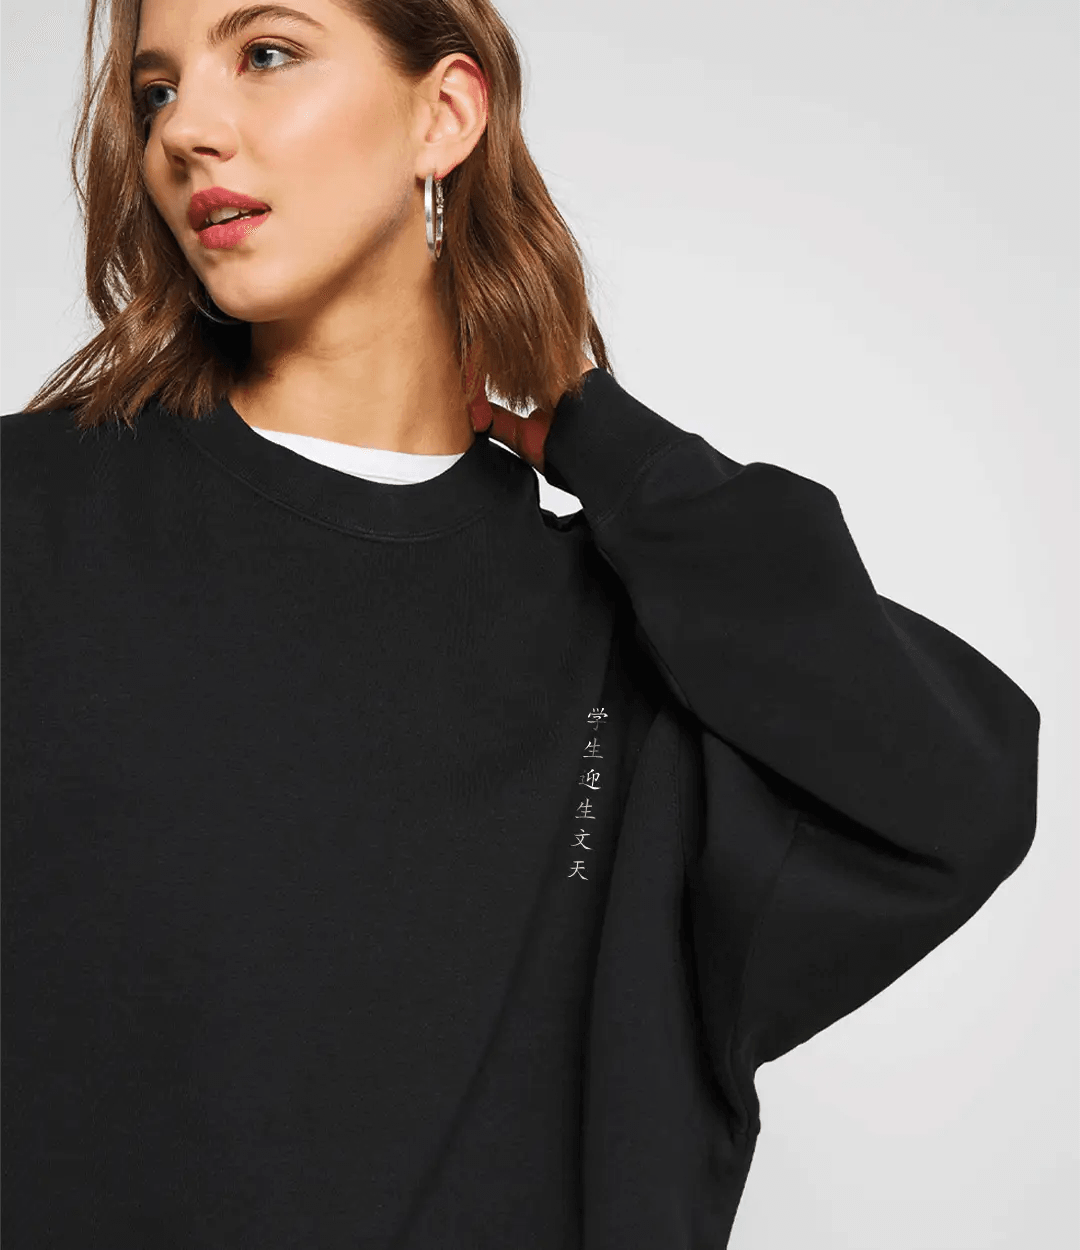 Josei Oversize Kadın Sweatshirt PΛSΛGE